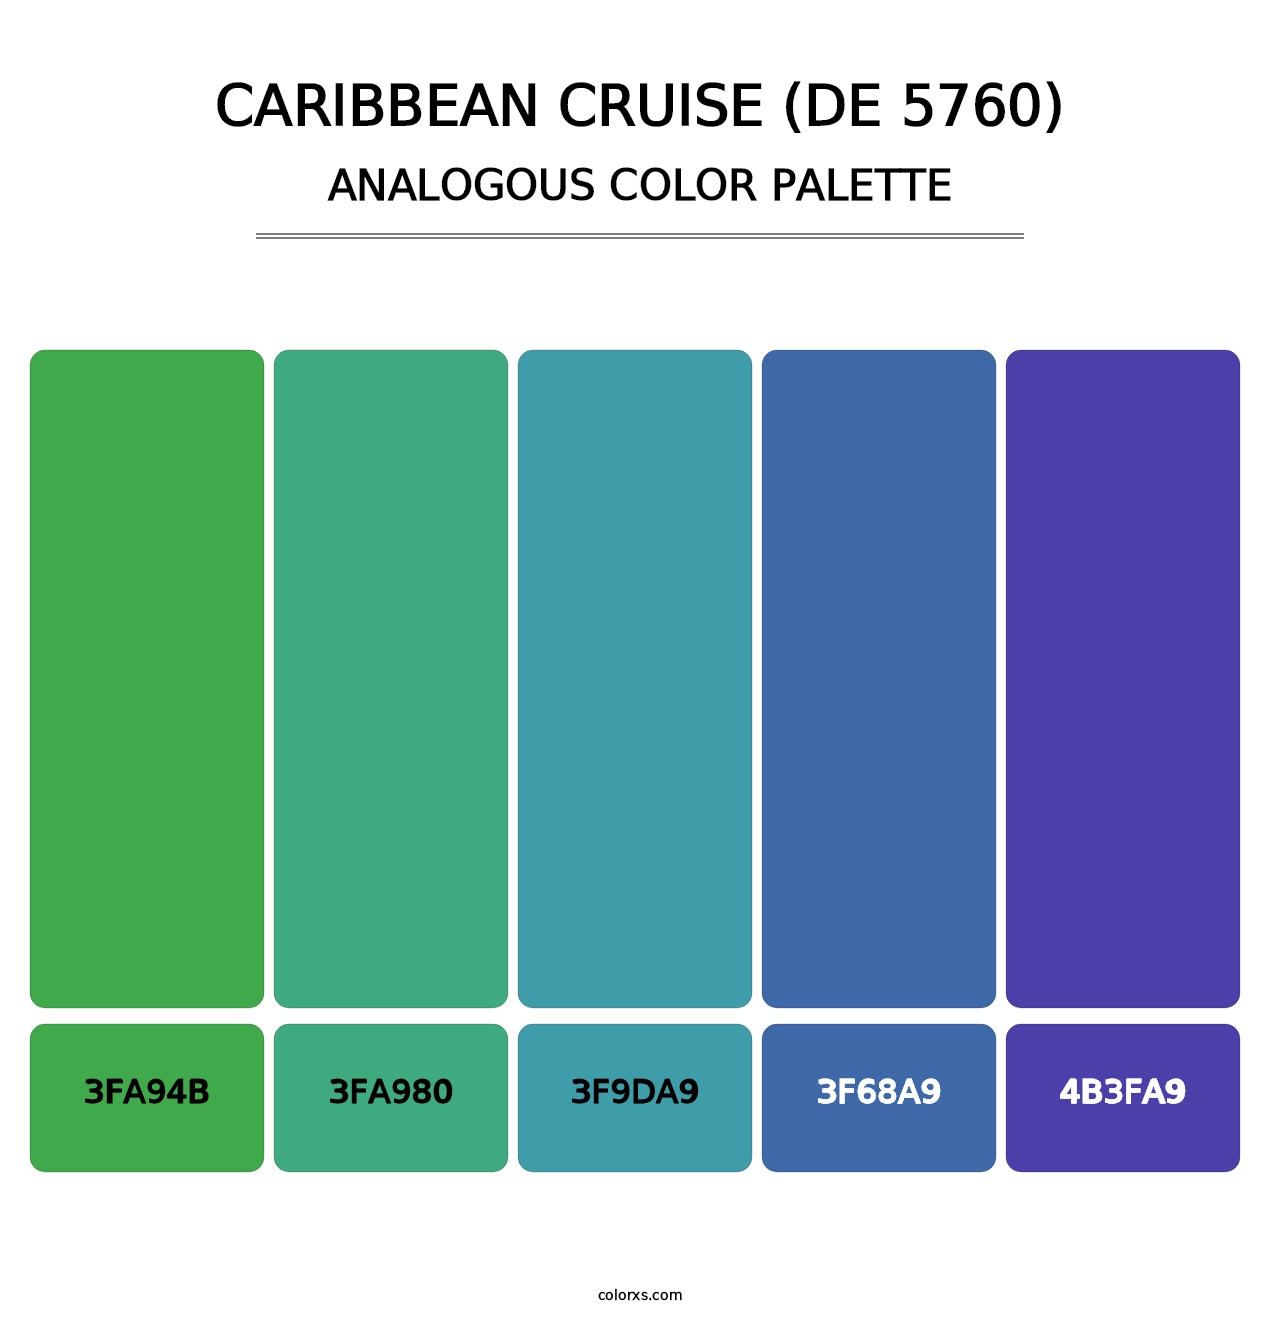 Caribbean Cruise (DE 5760) - Analogous Color Palette